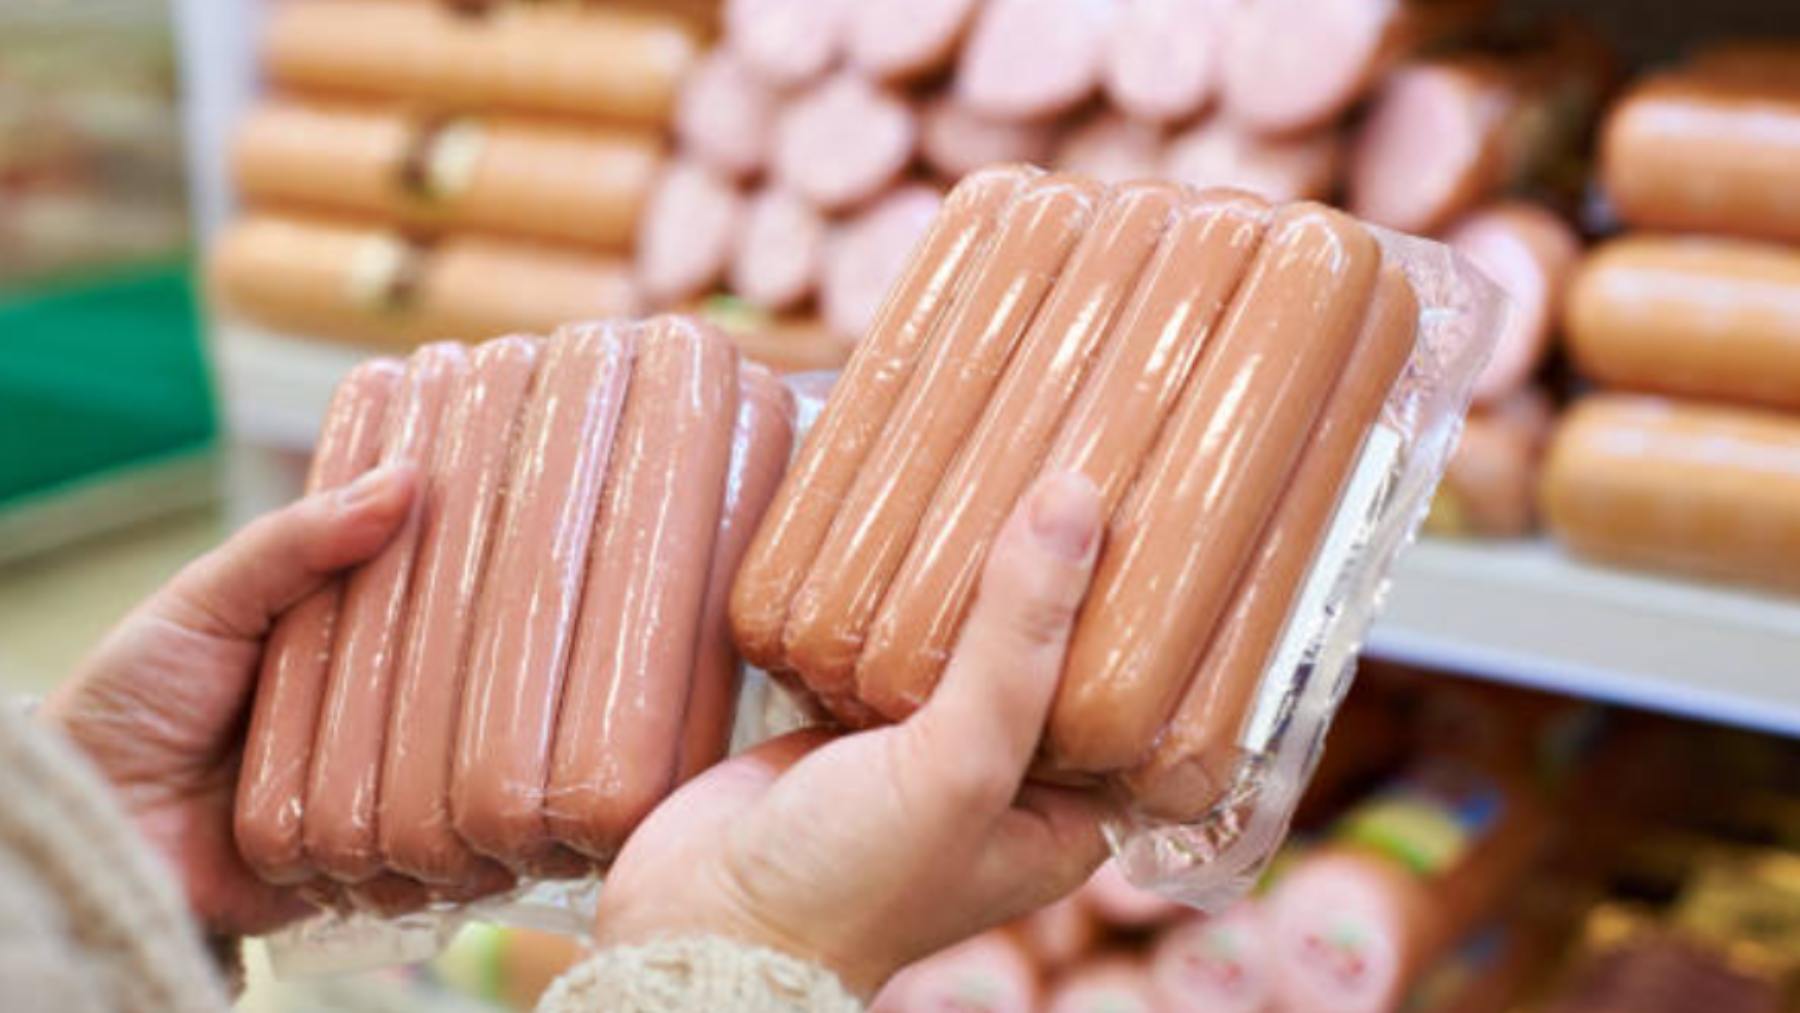 Unas salchichas vendidas en España han hecho saltar la alerta sanitaria por listeria, se pide que no se consuman y sean devueltas